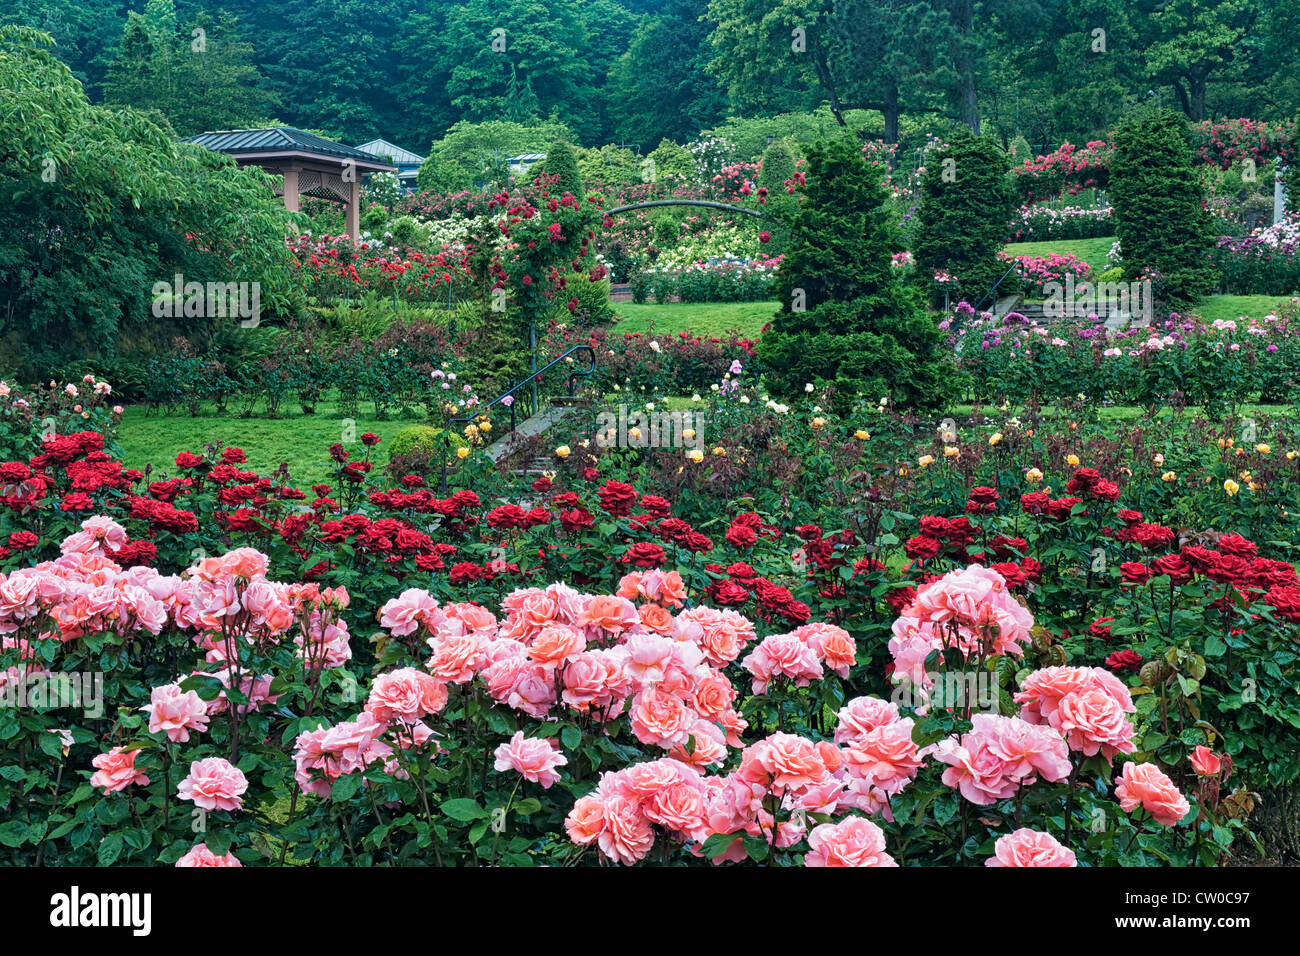 Portland International Rose Test Garden in Washington Park zeigt 7.000 Rosengewächse und 550 Sorten von Rosen. Stockfoto